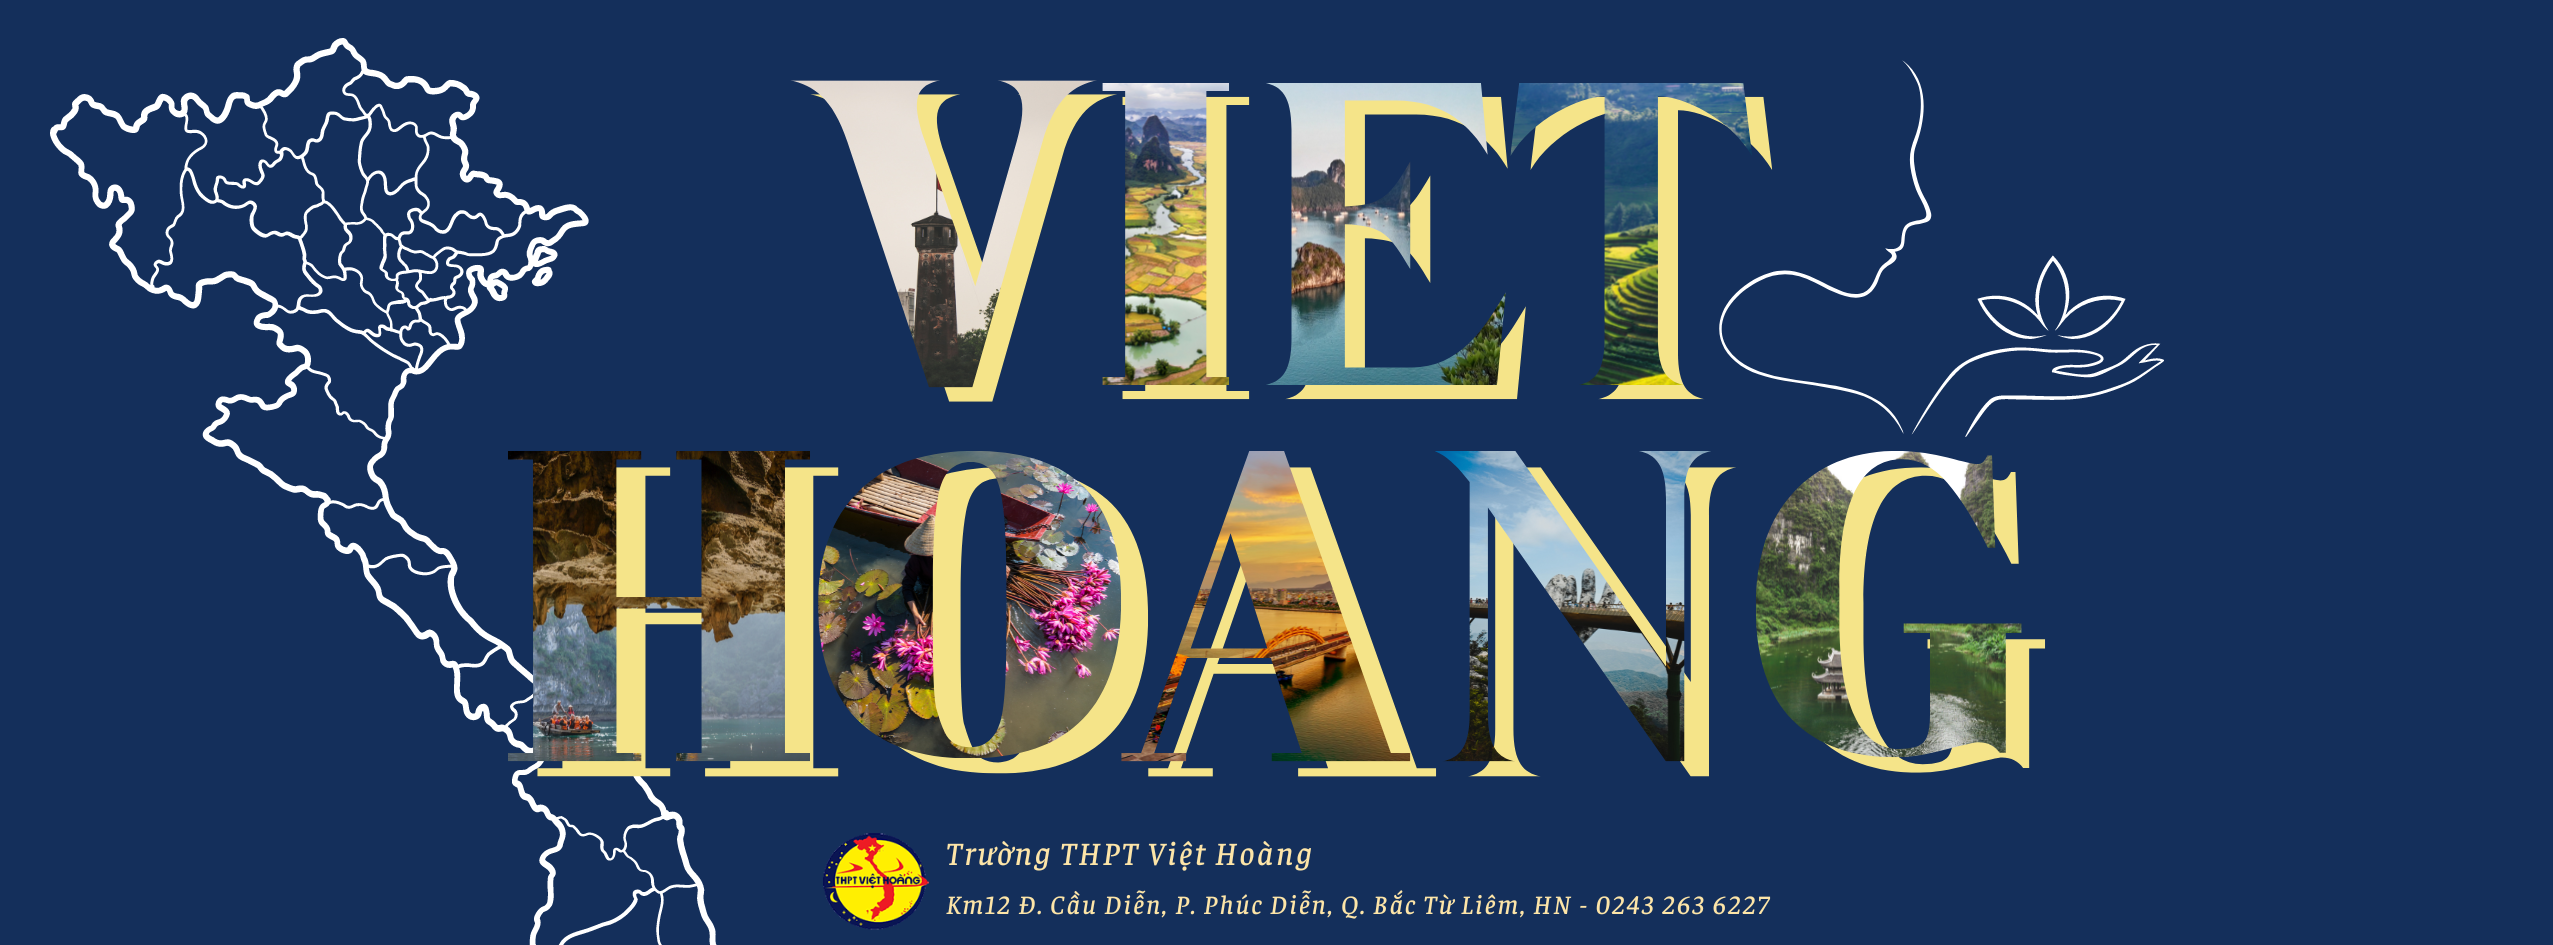 Trường THPT Việt Hoàng Thông báo tuyển sinh năm học 2023 – 2024